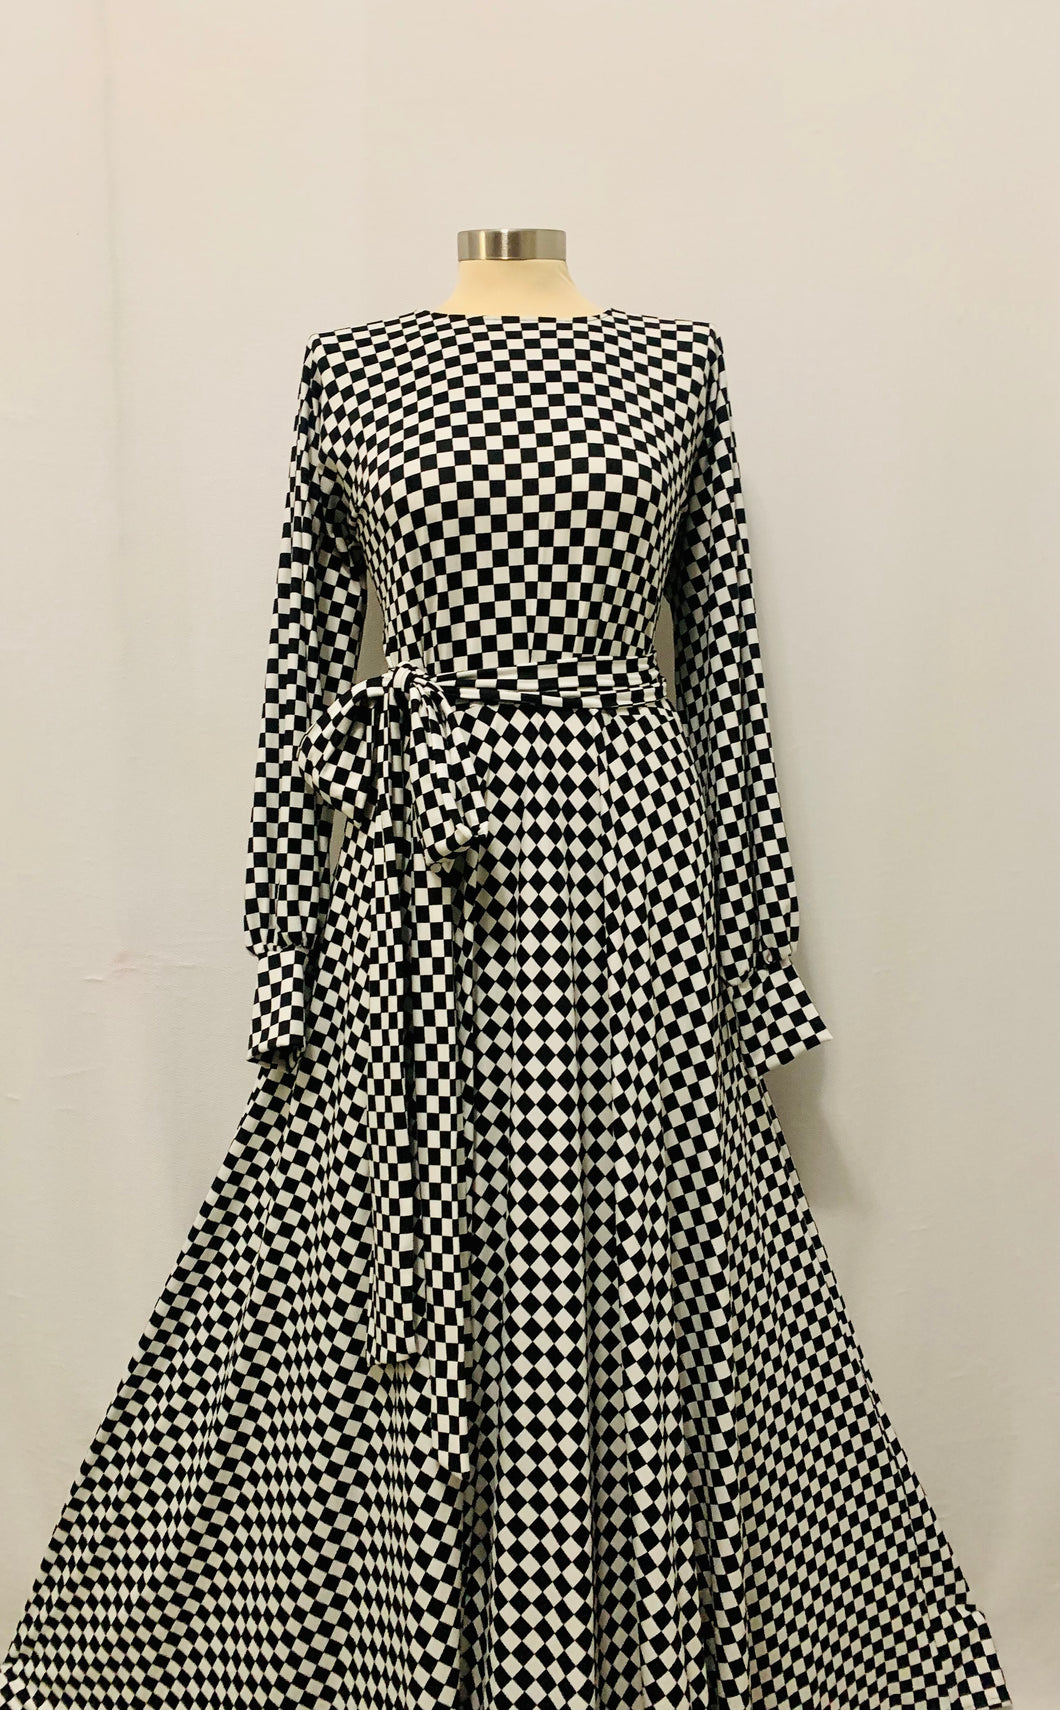 The Haya Checkered Swing dress